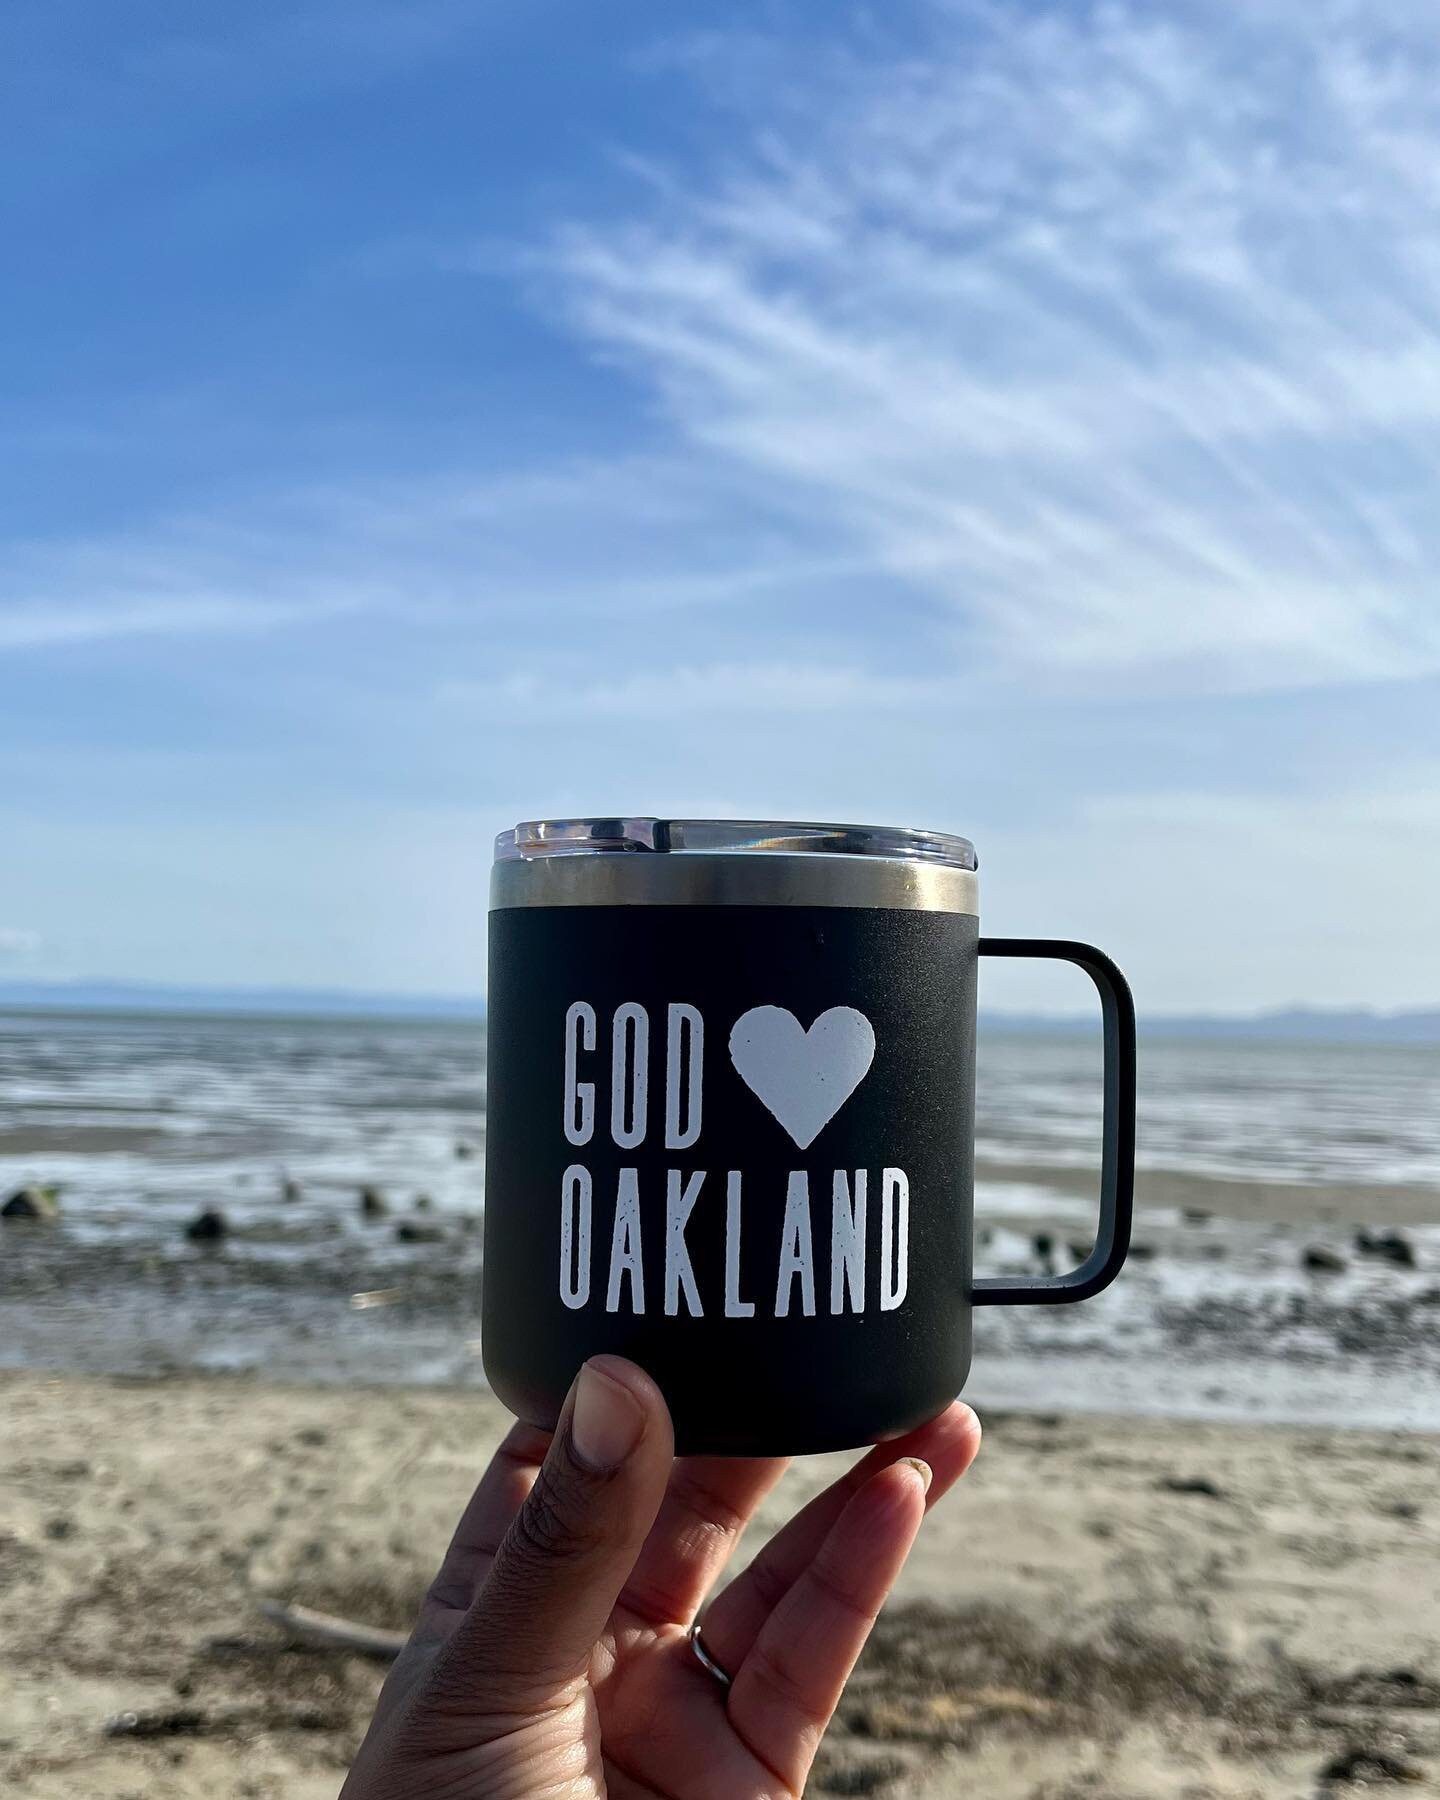 God &hearts;️ Oakland.
We do, too. 🫶🏾

#godlovesoakland #wedotoo #eastbaychurch #churcheastbay #oaklandchurch #joyinjesus